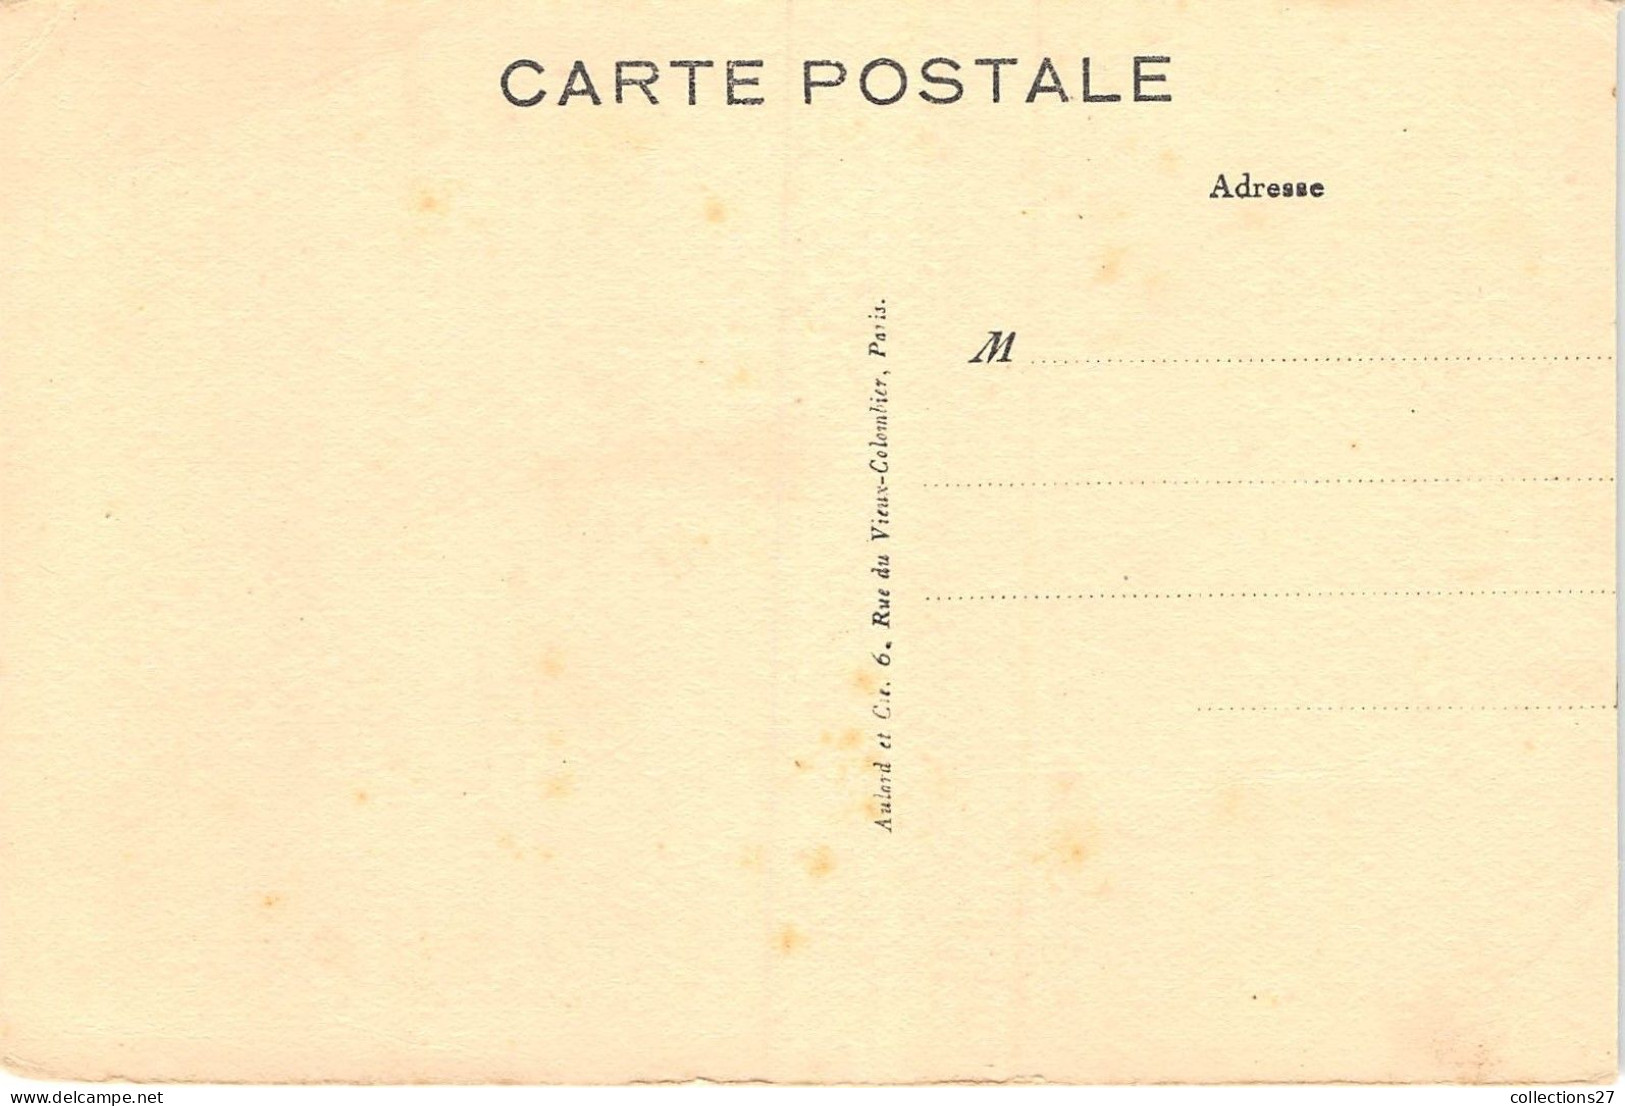 PARIS-75020- P.S.P AVRIL 1928 ETAT DES TRAVAUX 29 RUE DU RETRAIT - Distretto: 20